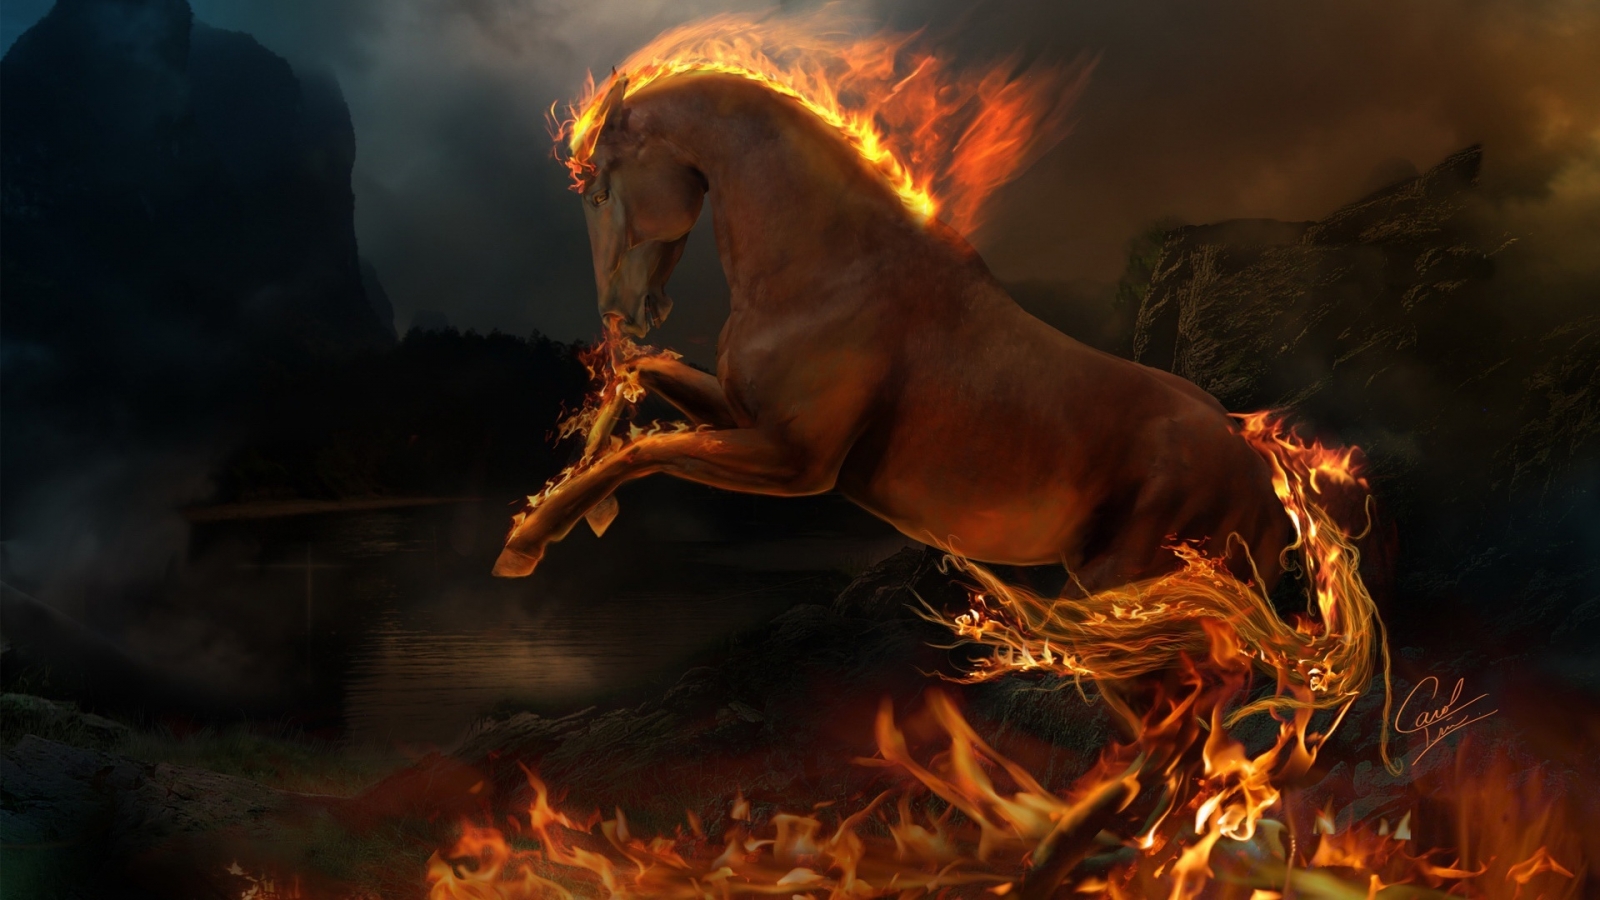 3D burning horse for 1600 x 900 HDTV resolution